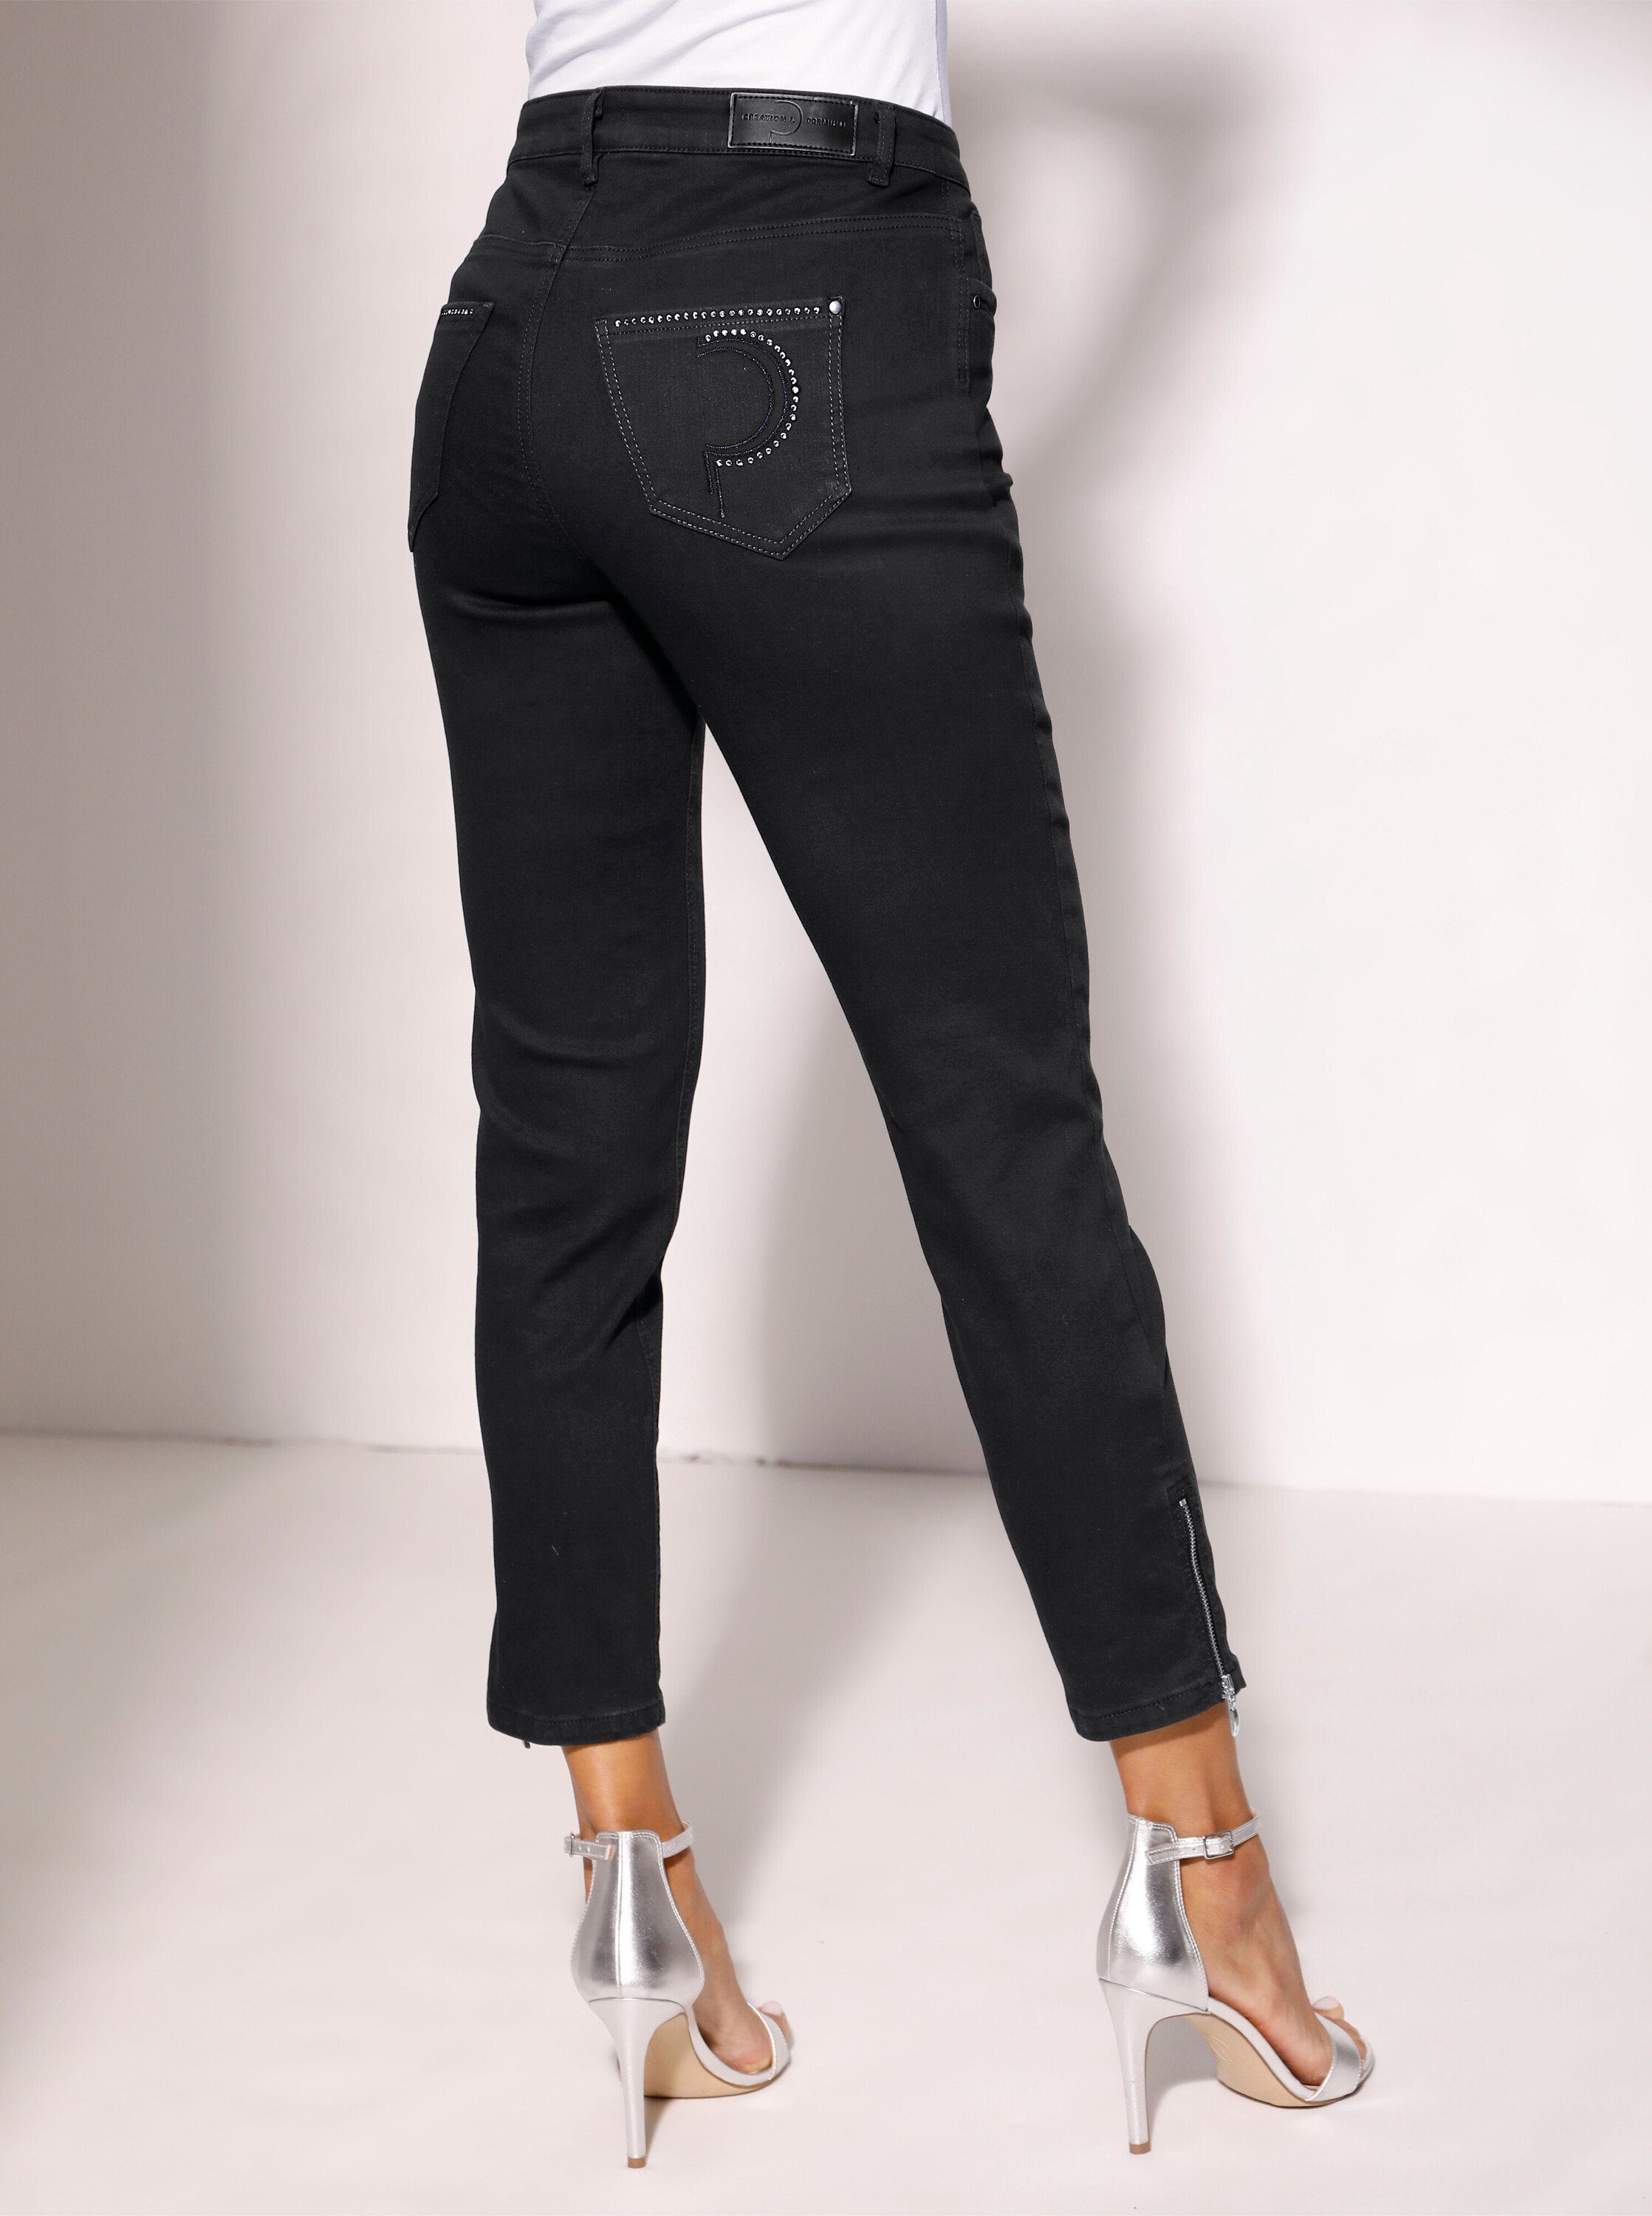 L schwarz creation Bequeme Jeans